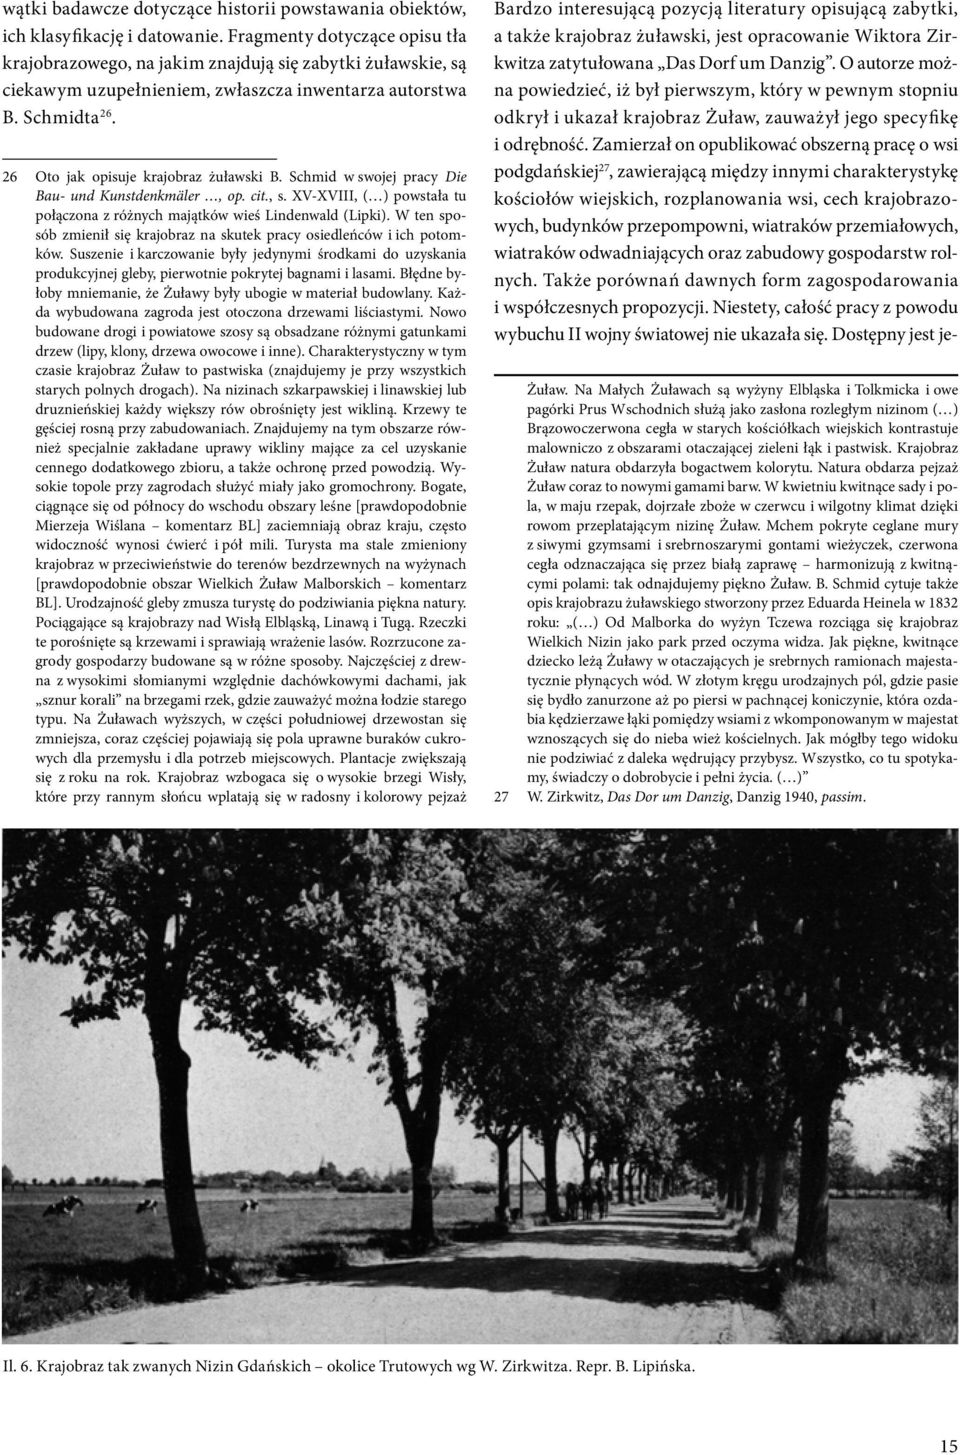 26 Oto jak opisuje krajobraz żuławski B. Schmid w swojej pracy Die Bau- und Kunstdenkmäler, op. cit., s. XV-XVIII, ( ) powstała tu połączona z różnych majątków wieś Lindenwald (Lipki).